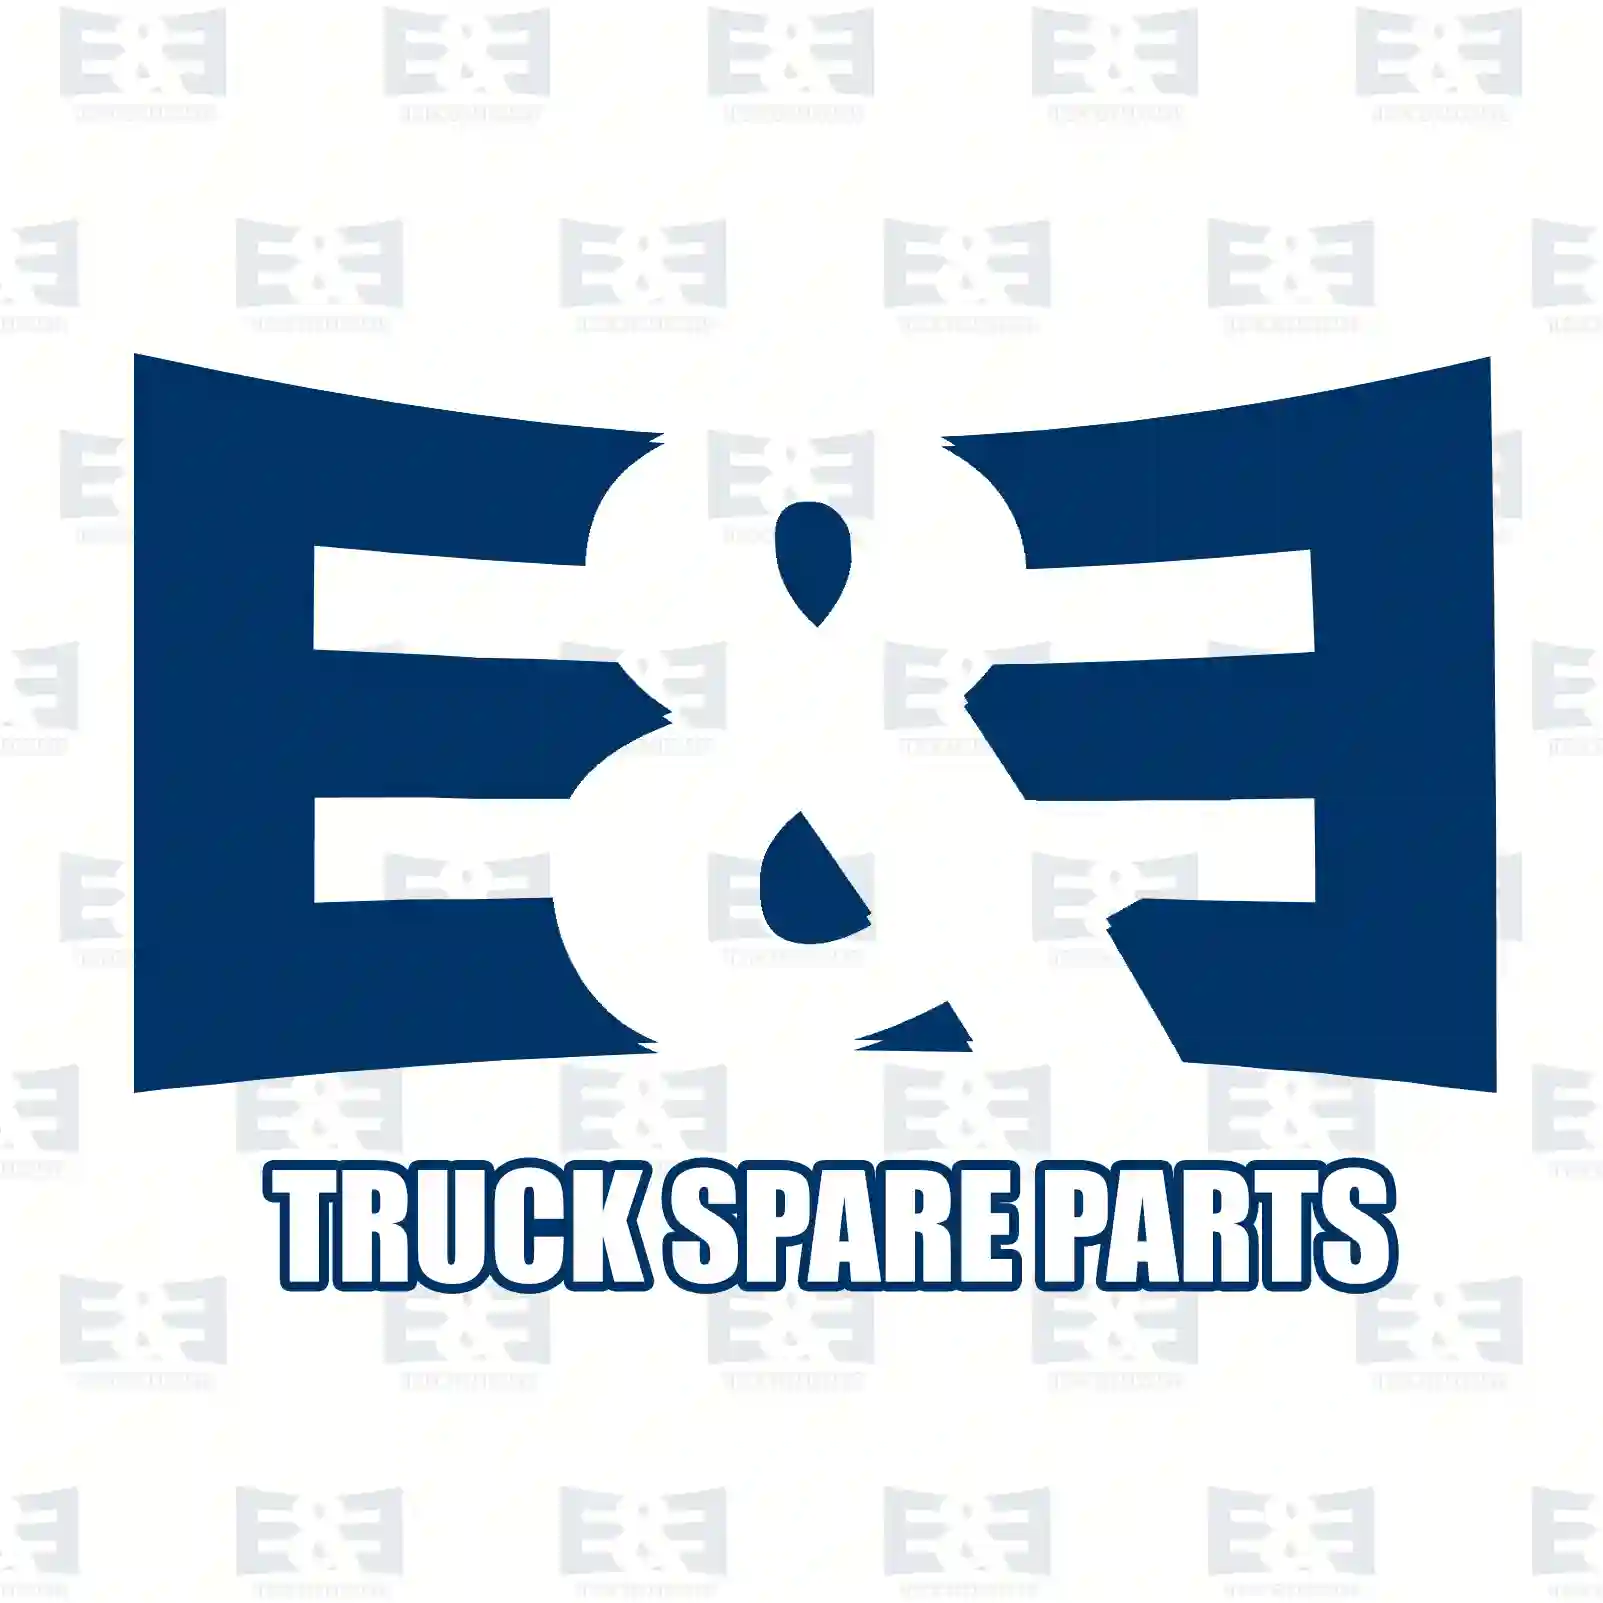 Exhaust brake, complete, 2E2208161, 1815347 ||  2E2208161 E&E Truck Spare Parts | Truck Spare Parts, Auotomotive Spare Parts Exhaust brake, complete, 2E2208161, 1815347 ||  2E2208161 E&E Truck Spare Parts | Truck Spare Parts, Auotomotive Spare Parts